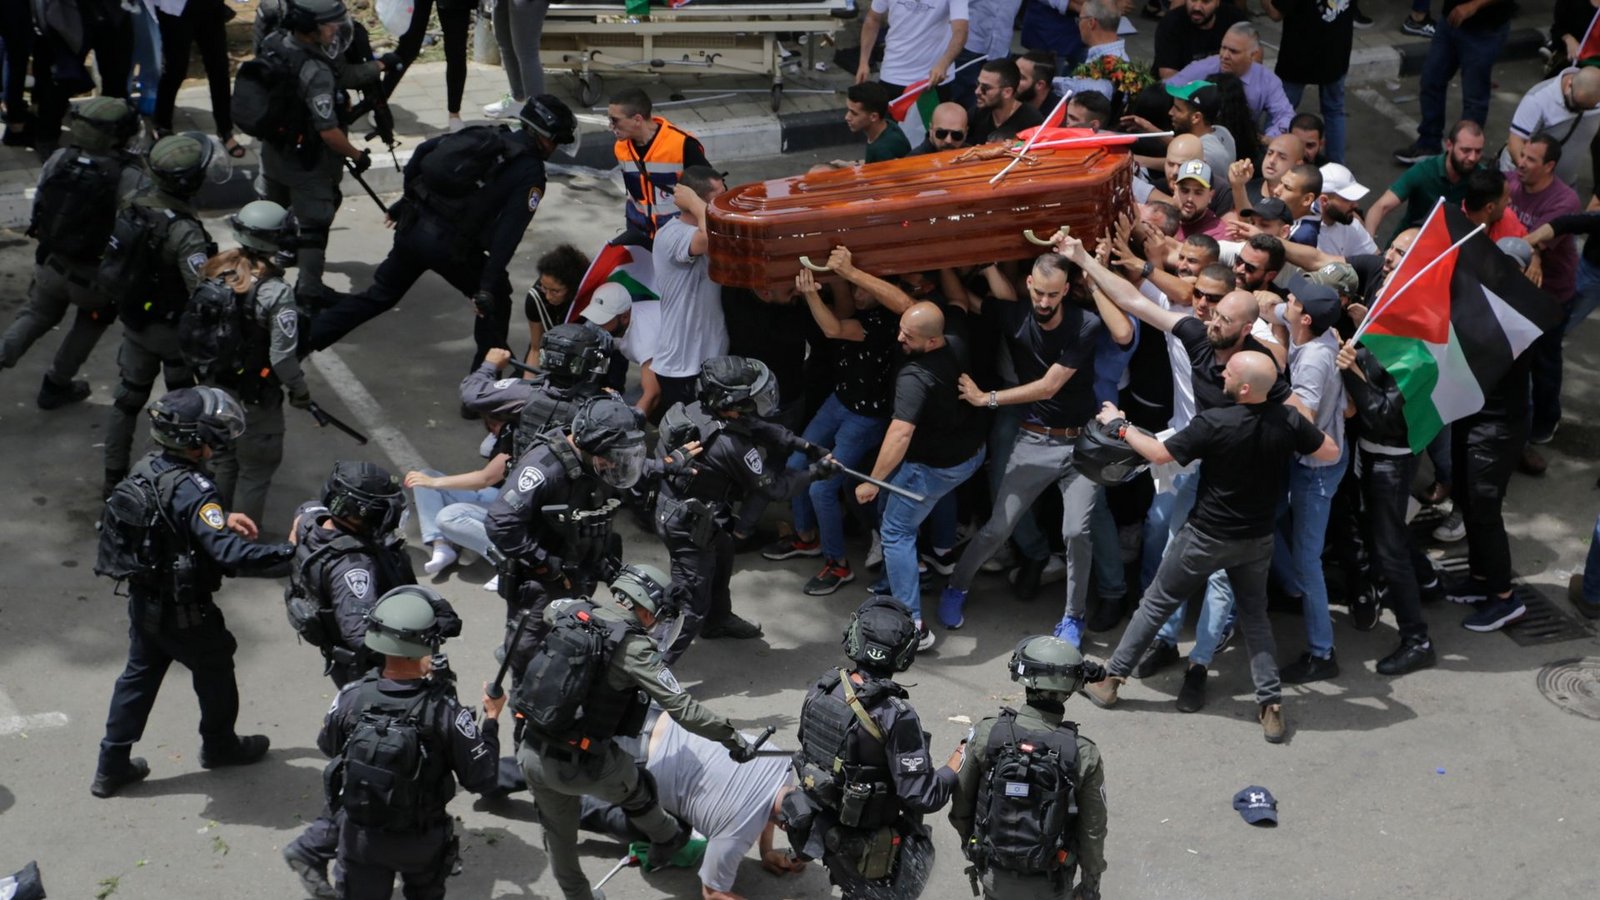 Israelische Polizisten stoßen mit palästinensischen Trauernden zusammen, die den Sarg der getöteten Al-Dschasira-Reporterin Abu Akle tragen. Die Gewalt der Sicherheitskräfte sorgt international für Bestürzung.Foto: Maya Levin/AP/dpa